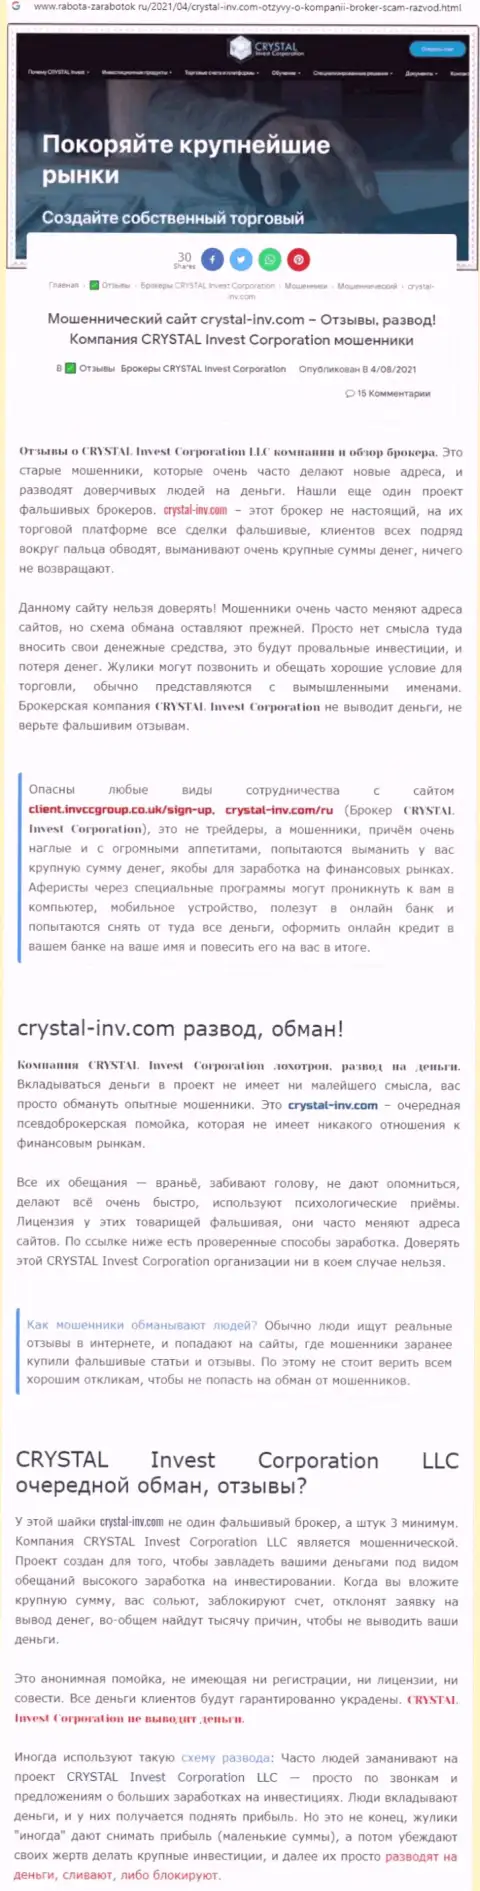 Материал, выводящий на чистую воду организацию Crystal-Inv Com, который позаимствован с интернет-портала с обзорами различных организаций